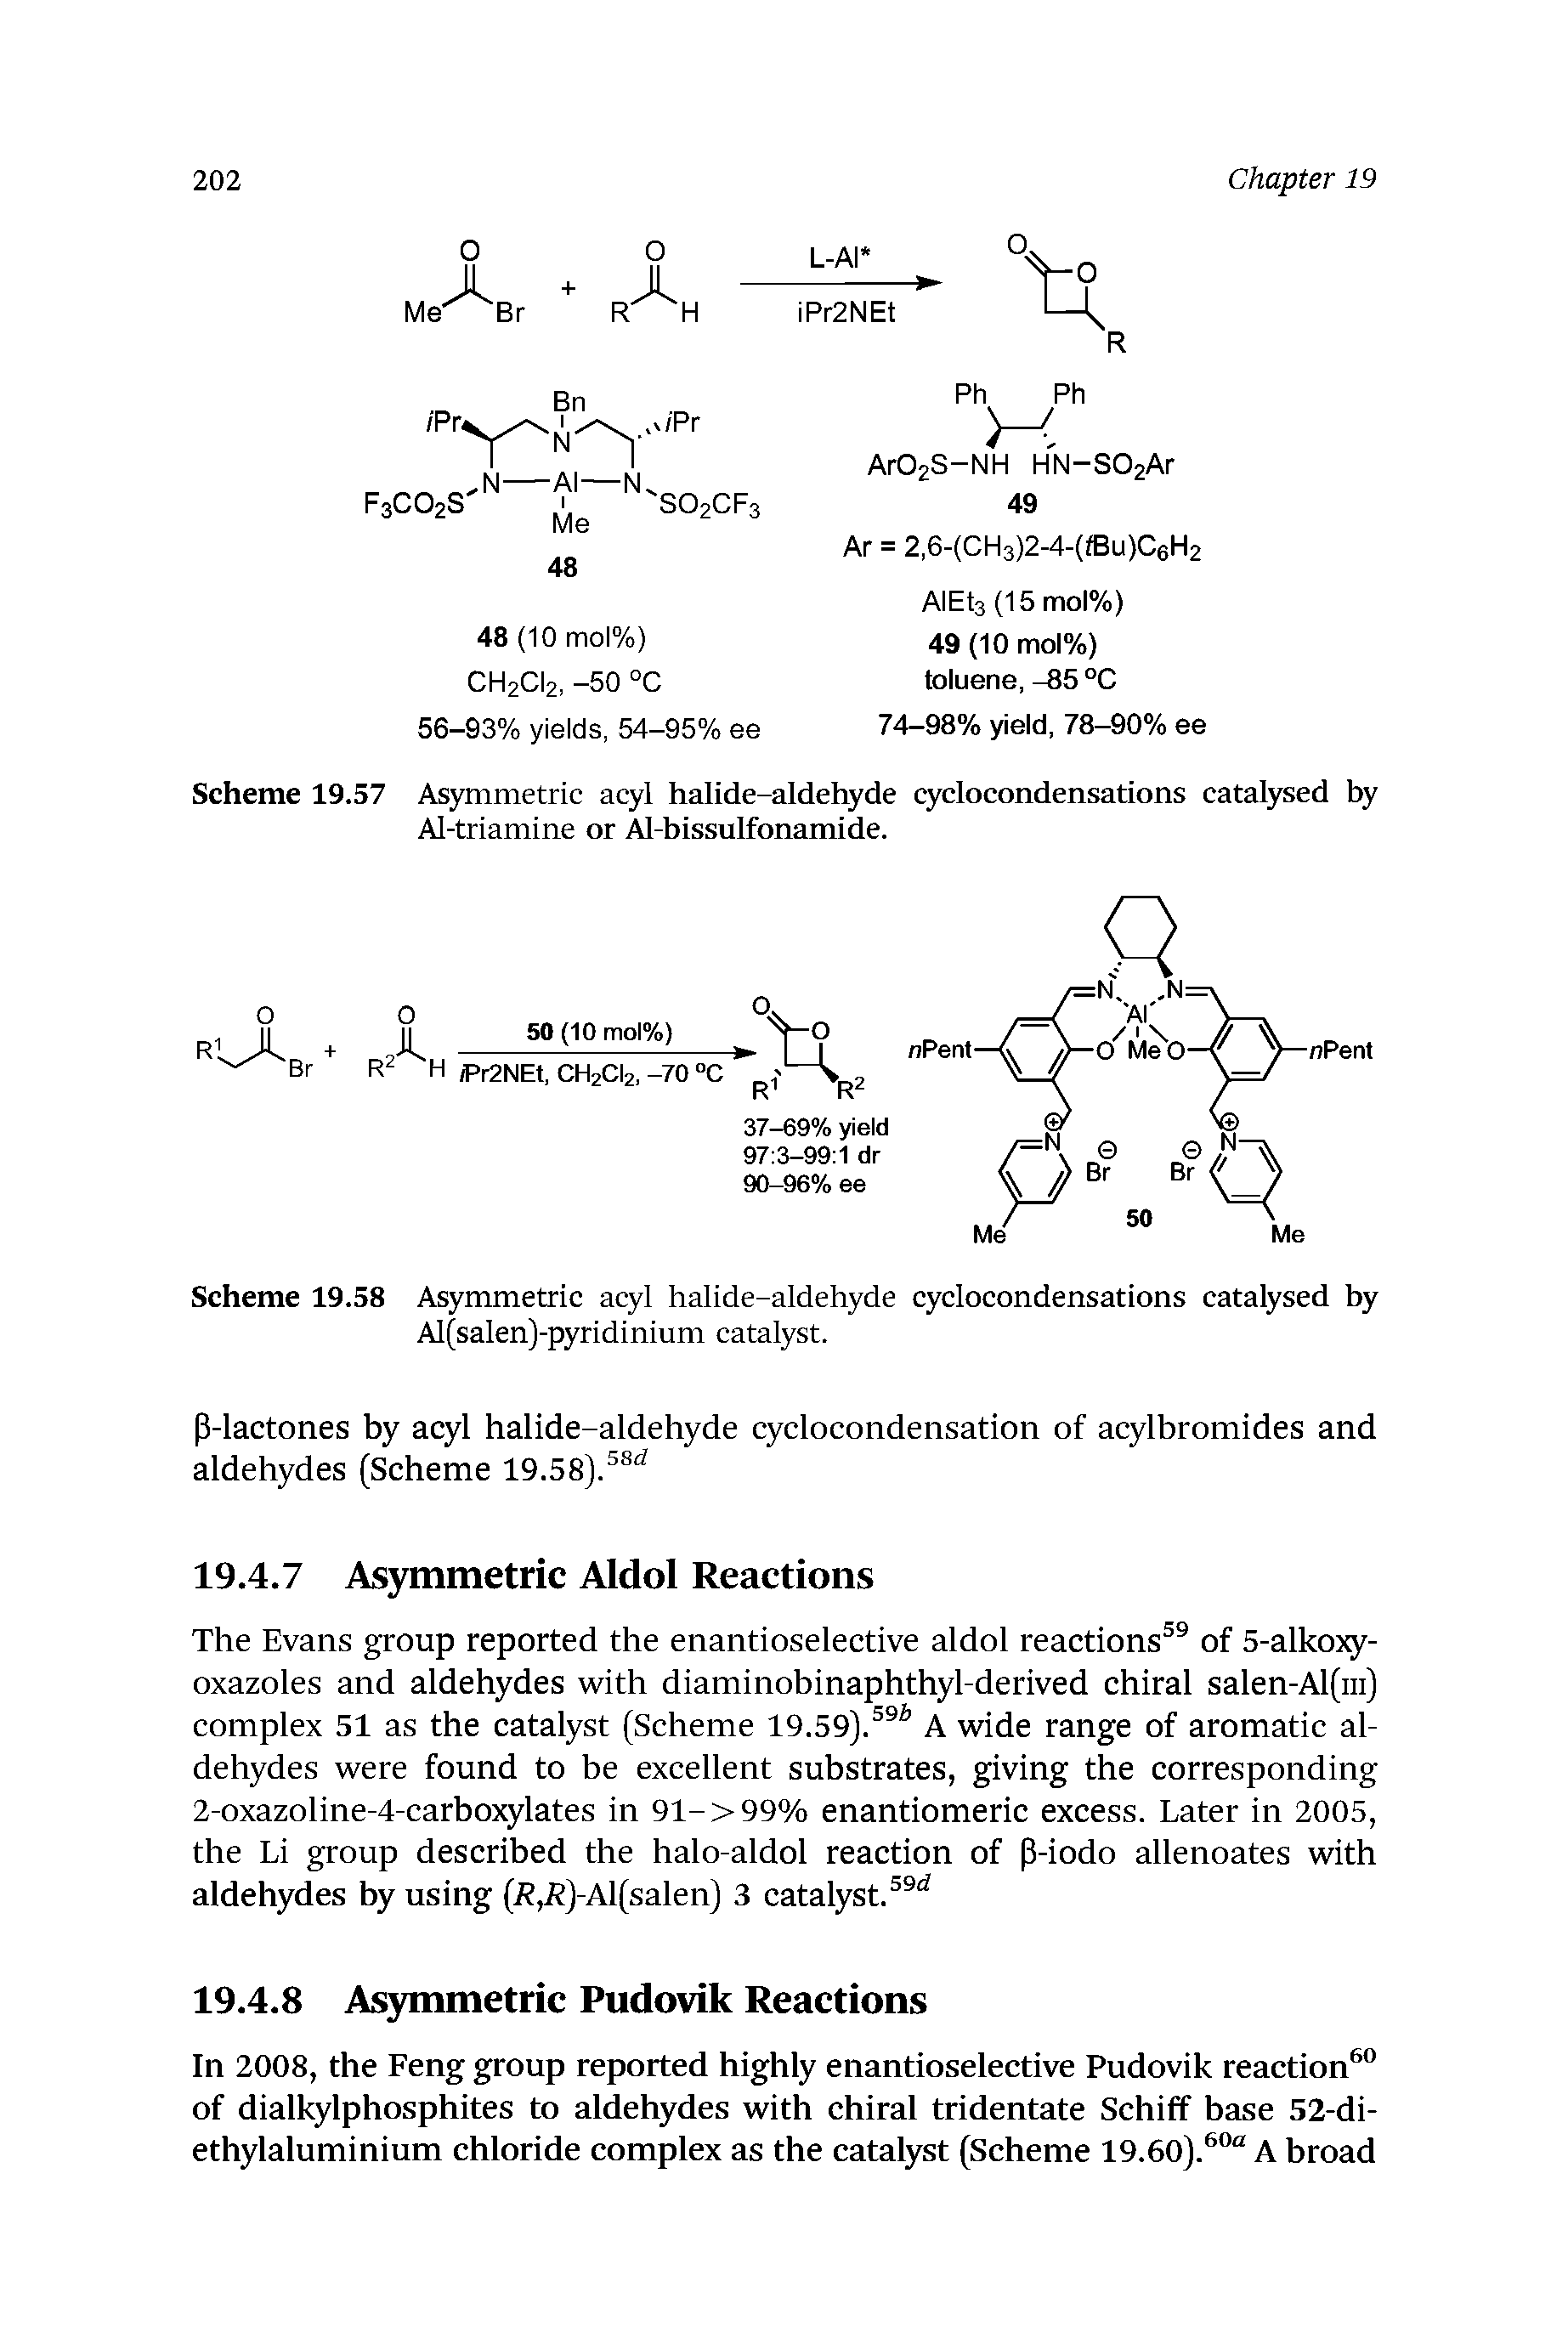 Scheme 19.57 Asymmetric acyl halide-aldehyde cyclocondensations catalysed by Al-triamine or Al-bissulfonamide.